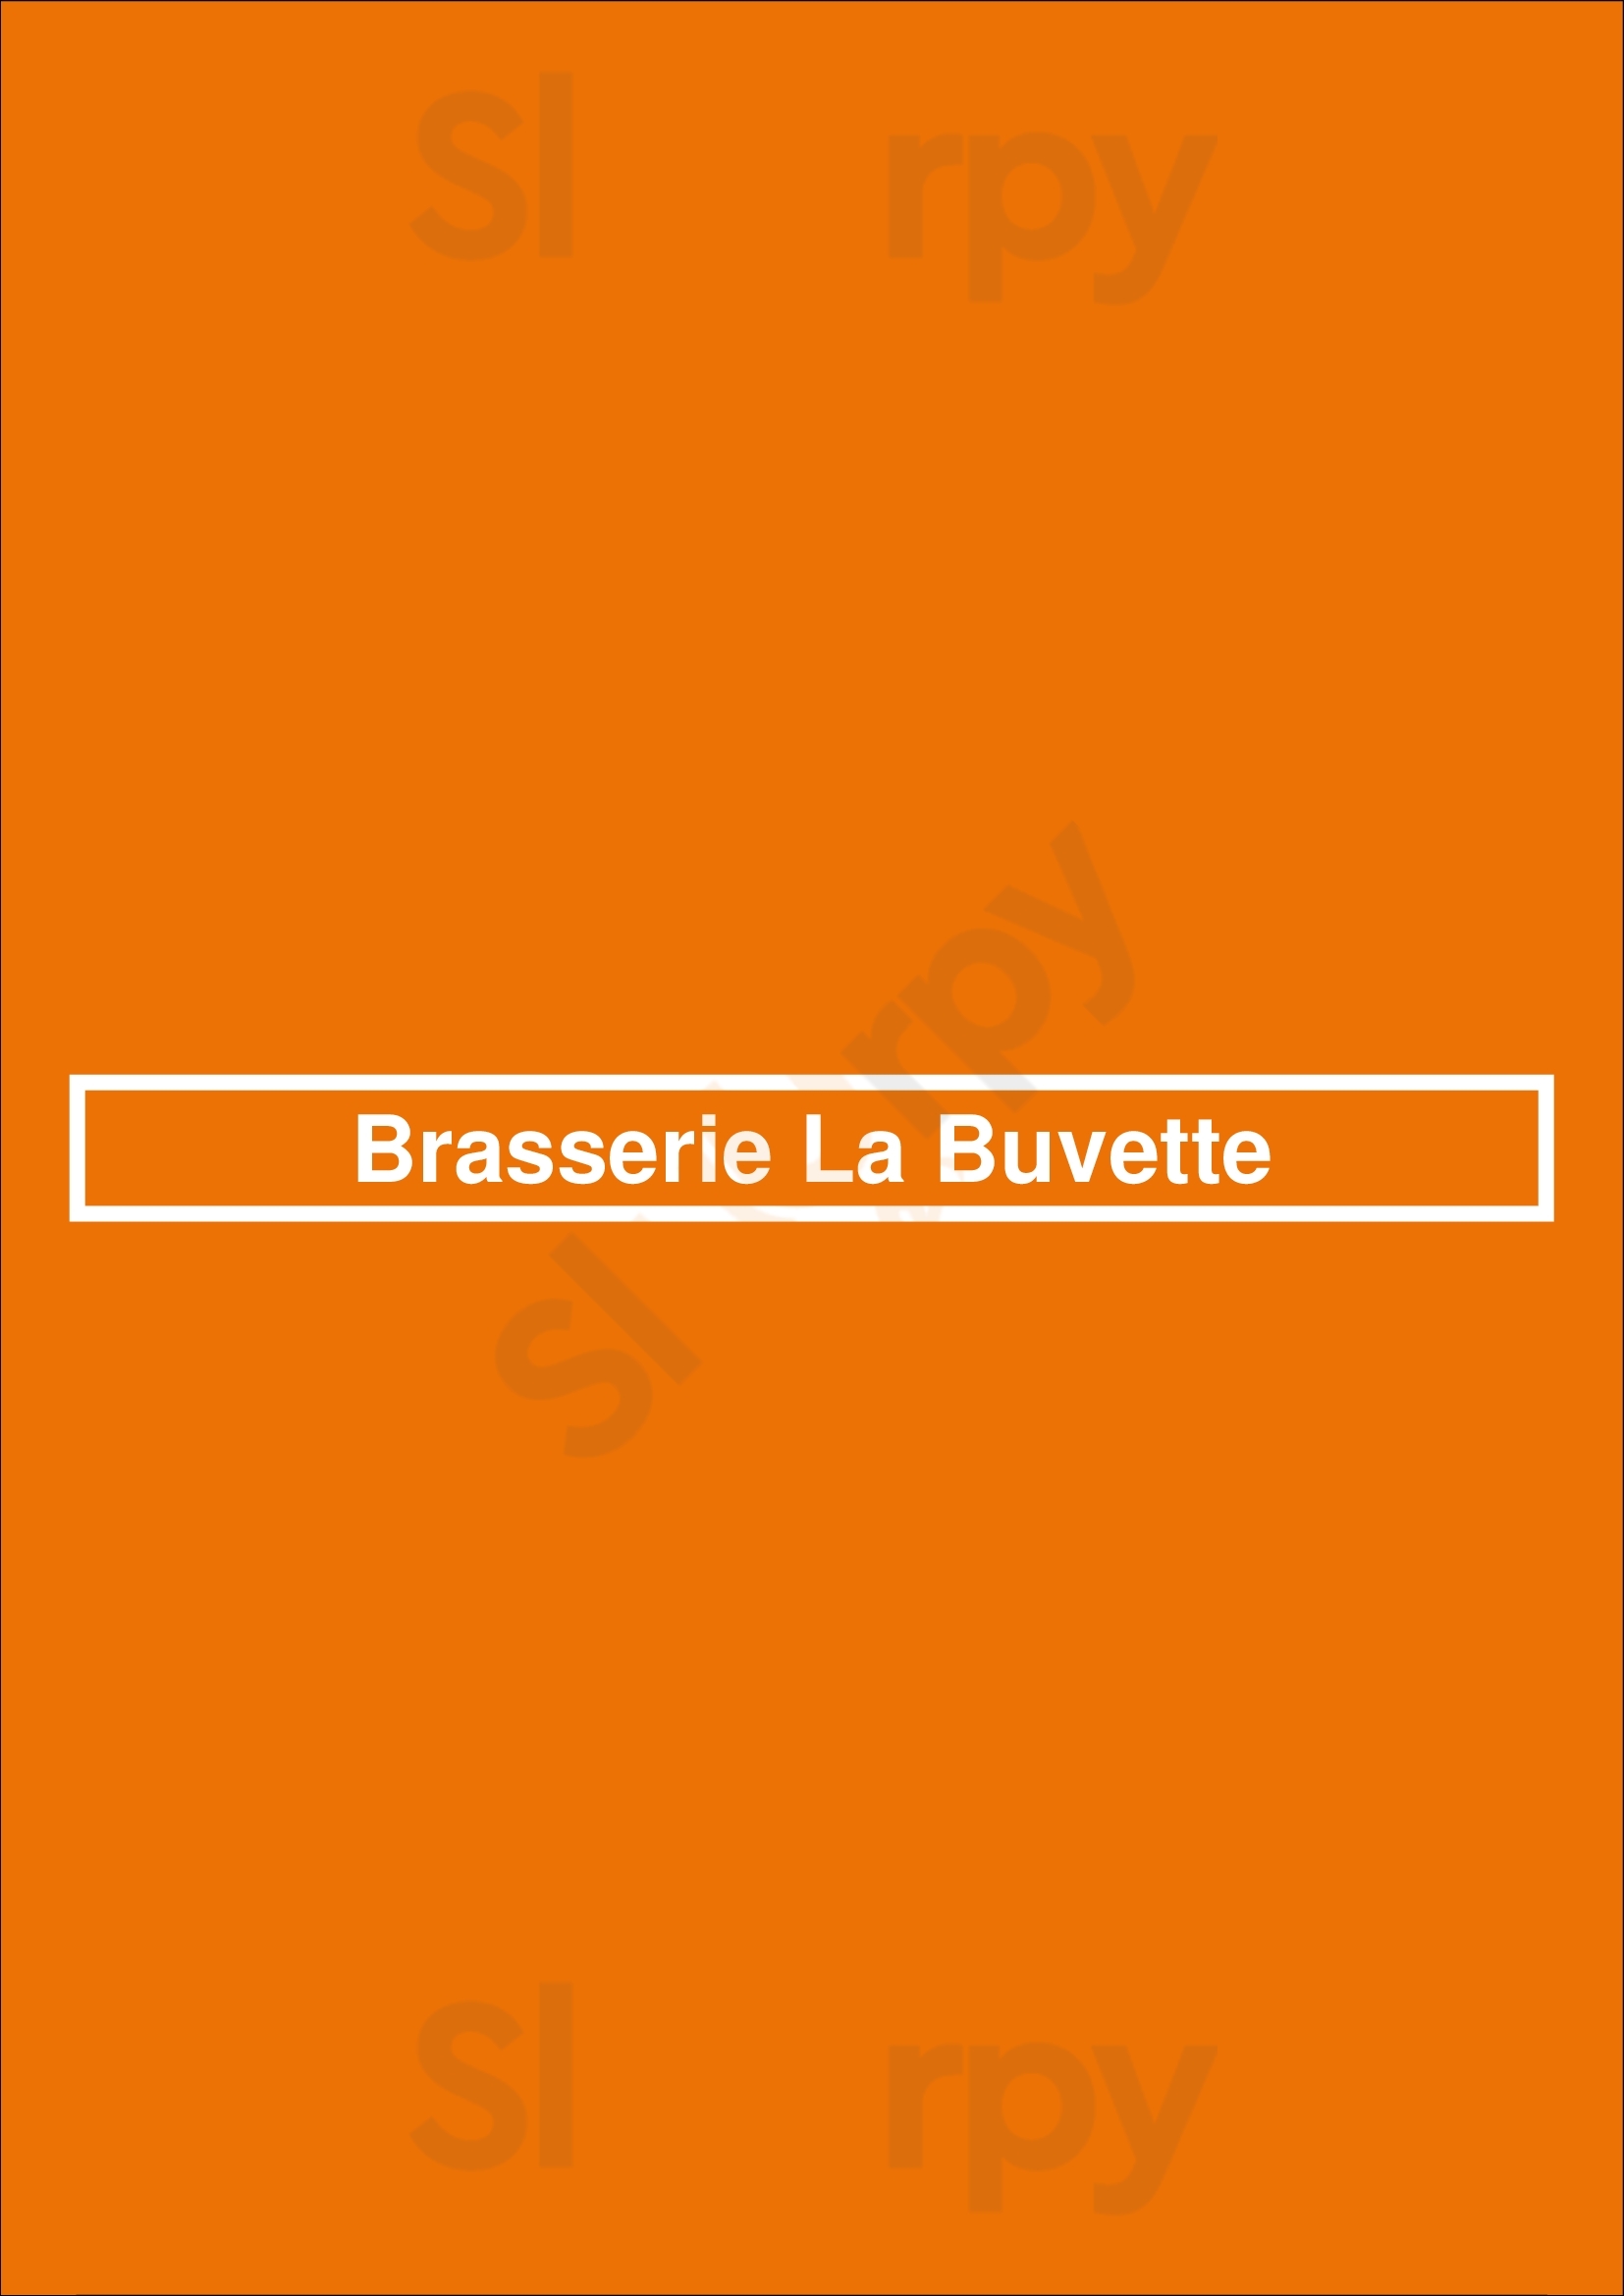 Brasserie La Buvette Rotterdam Menu - 1